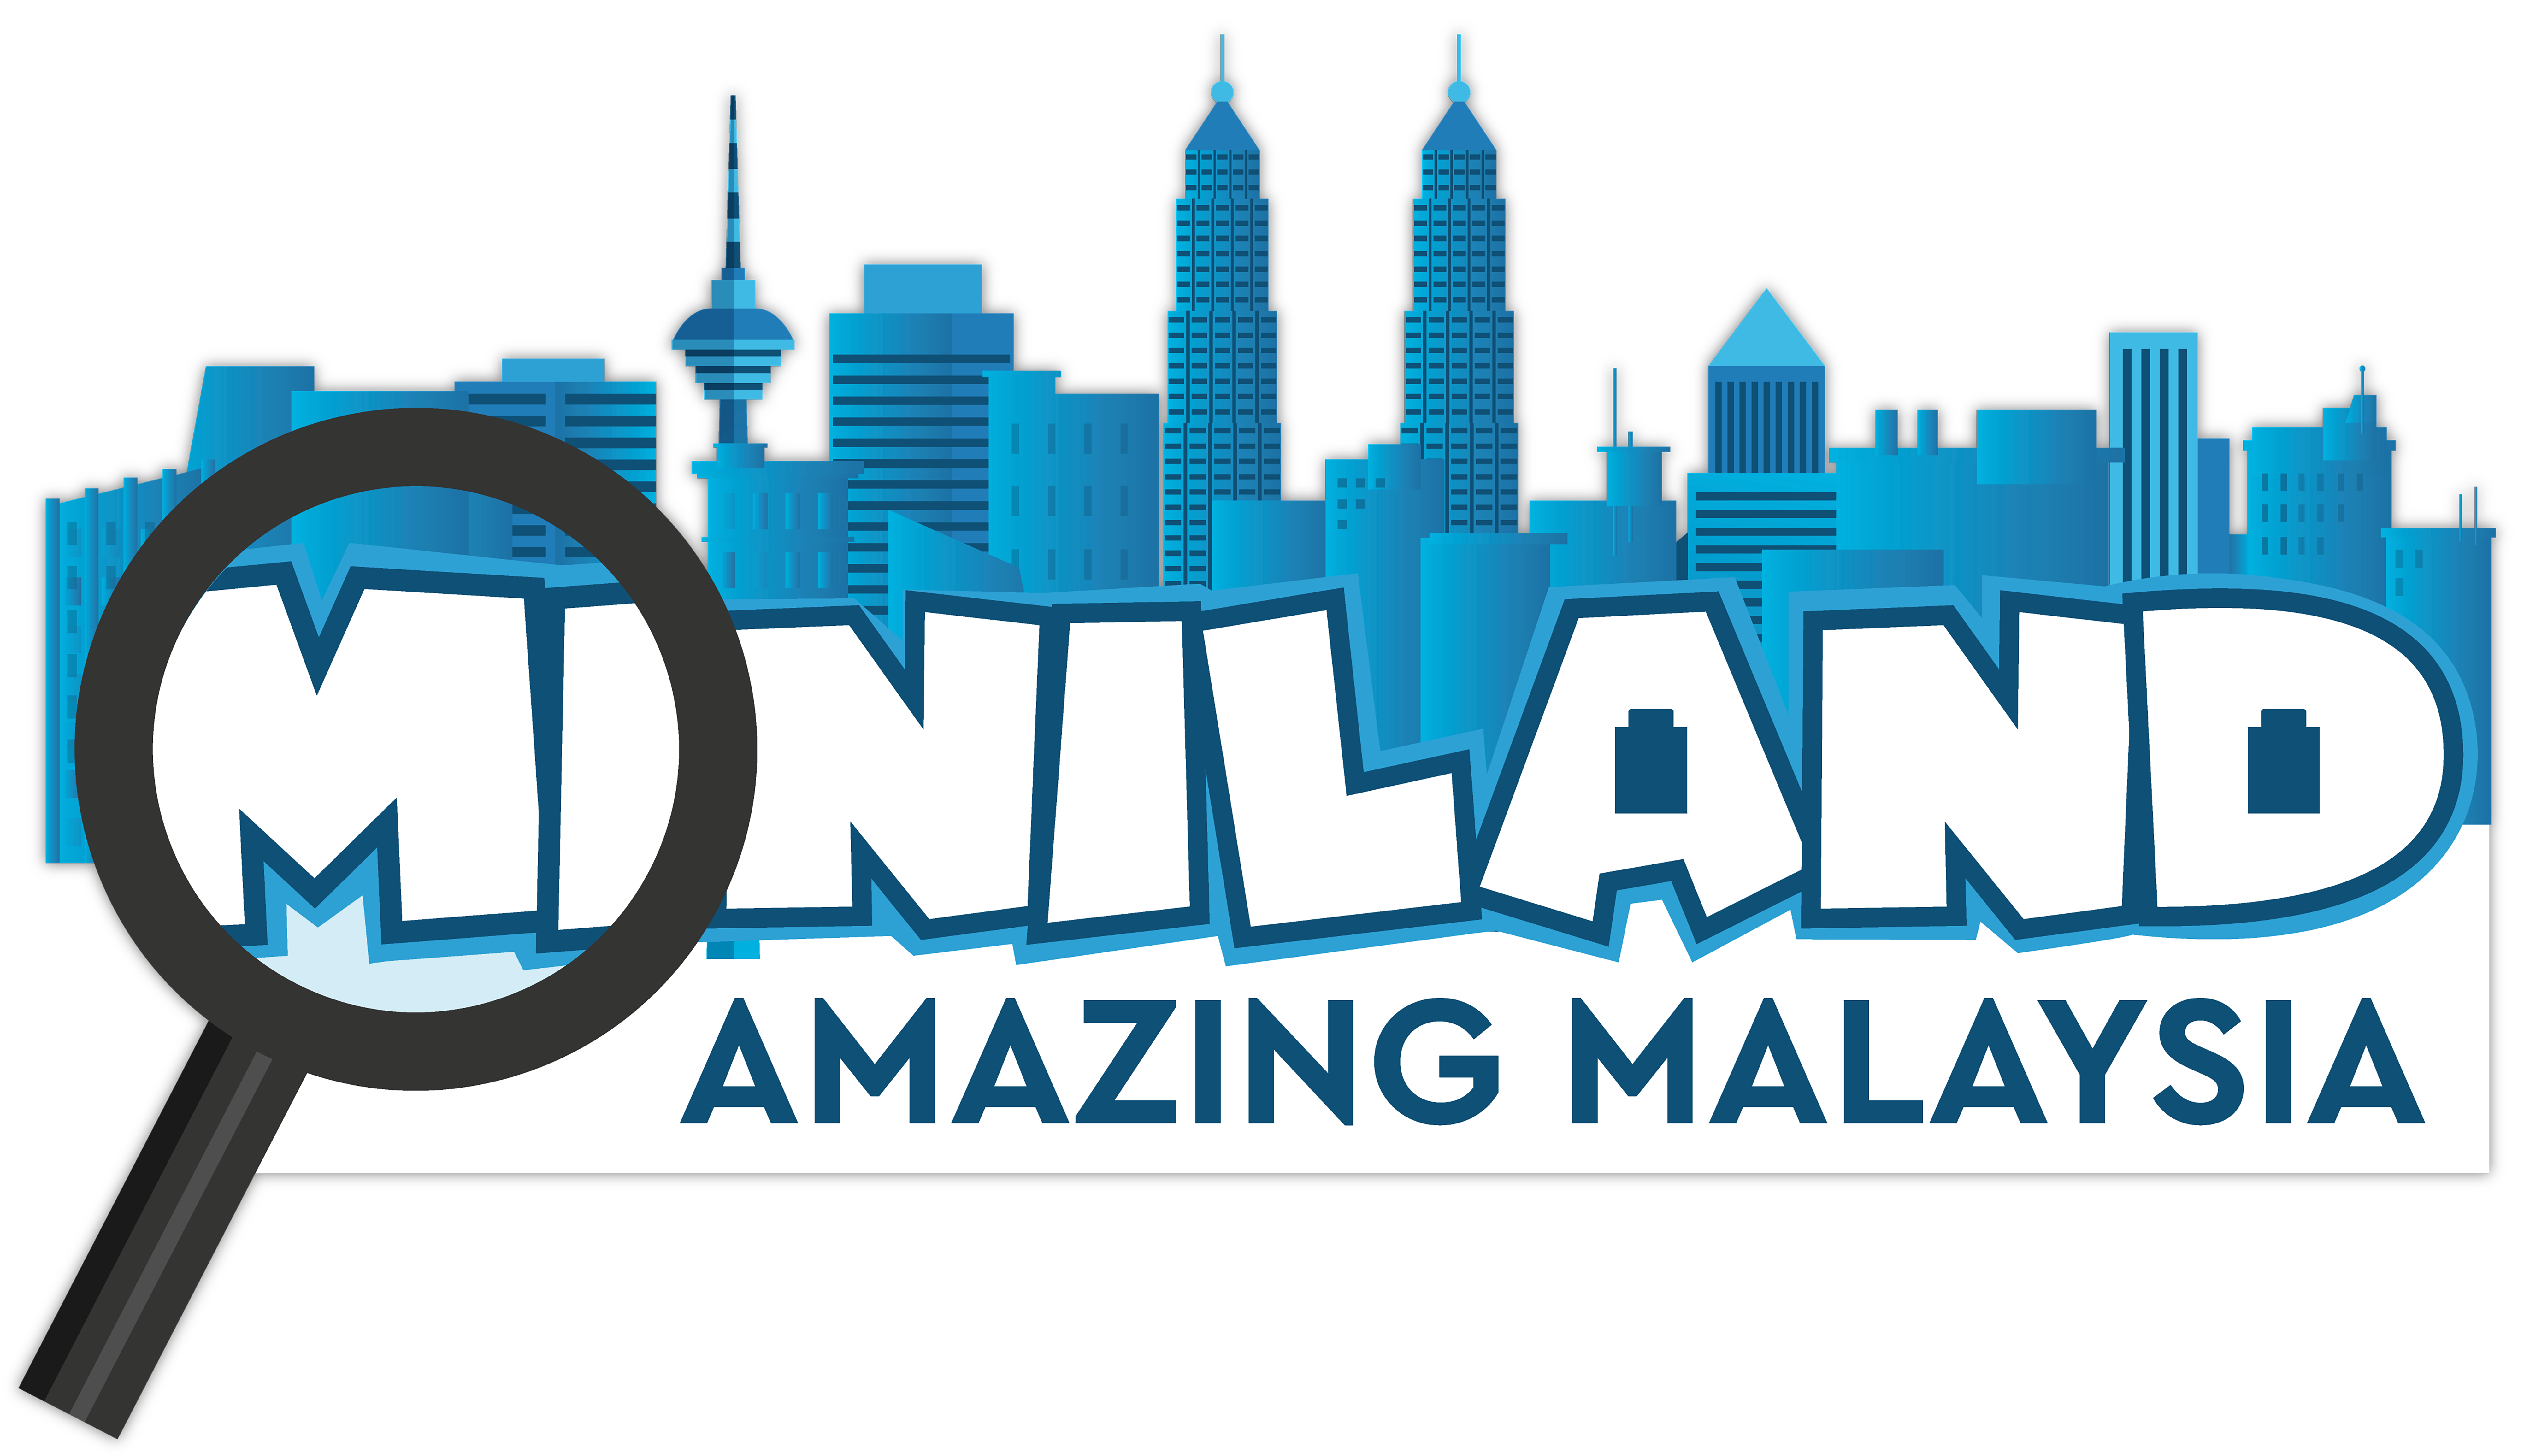 MINILAND Amazing Malaysia